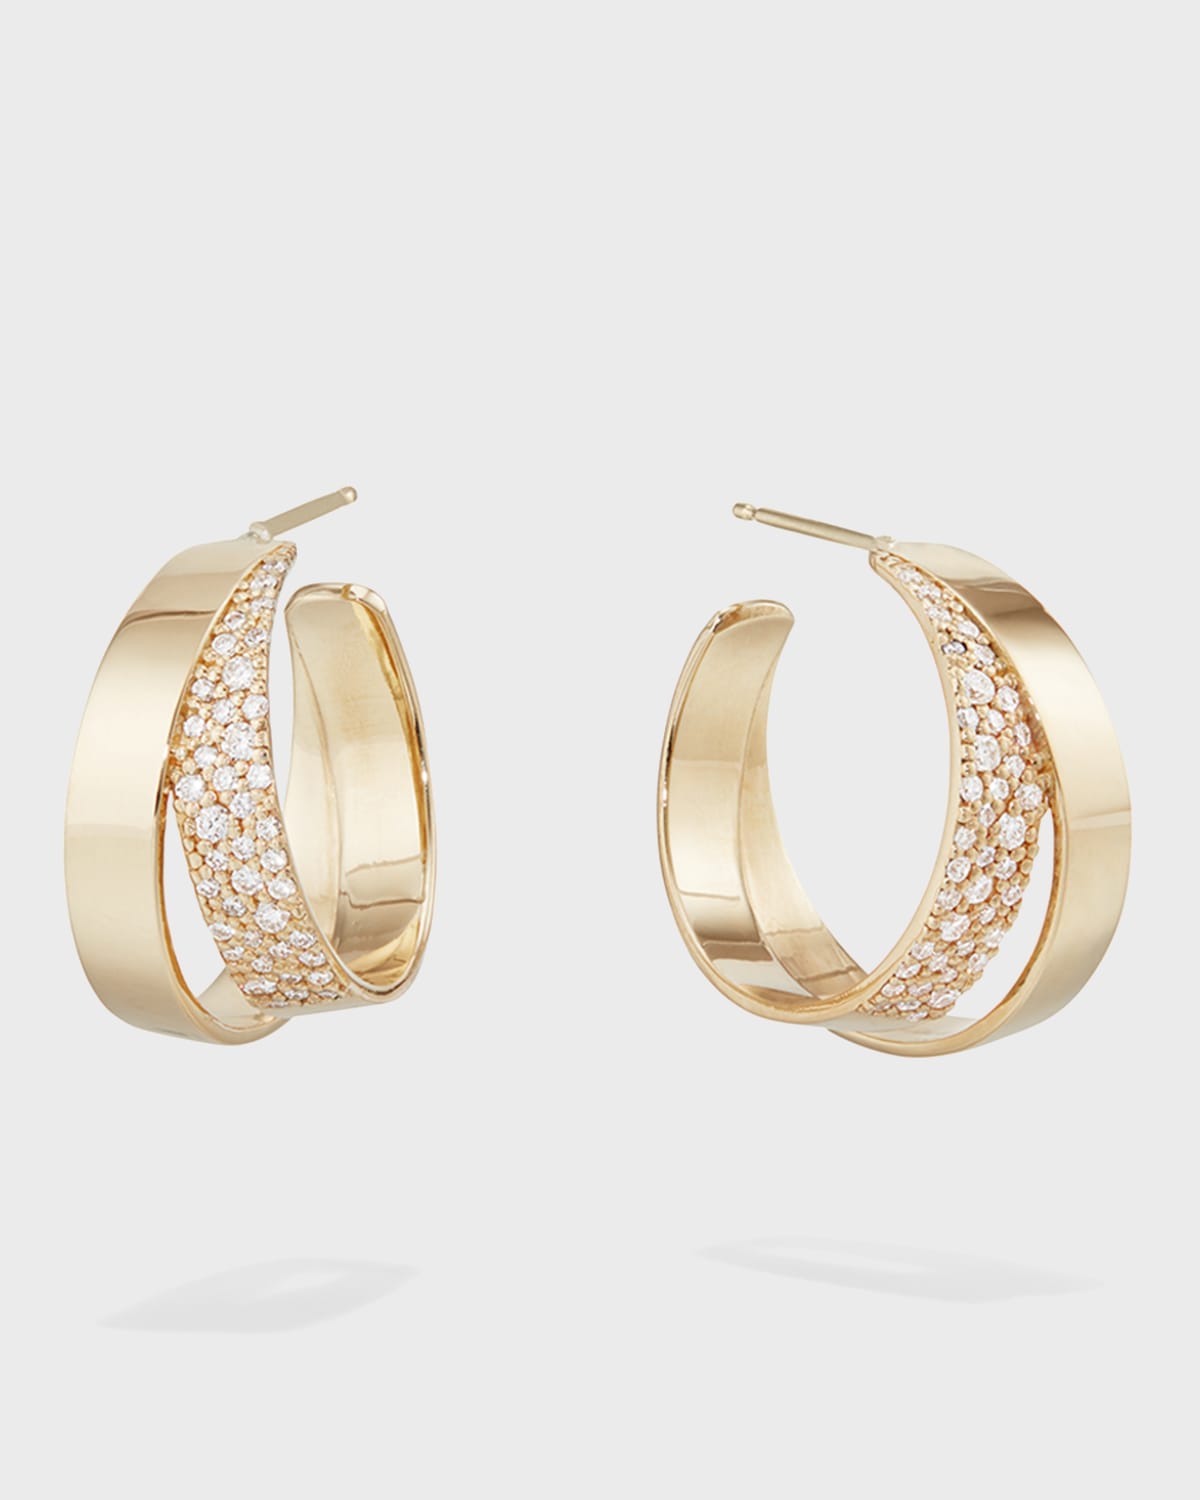 Lana 14k Flawless Double Vanity Hoop Earrings W/ Diamonds, 20mm In Gold